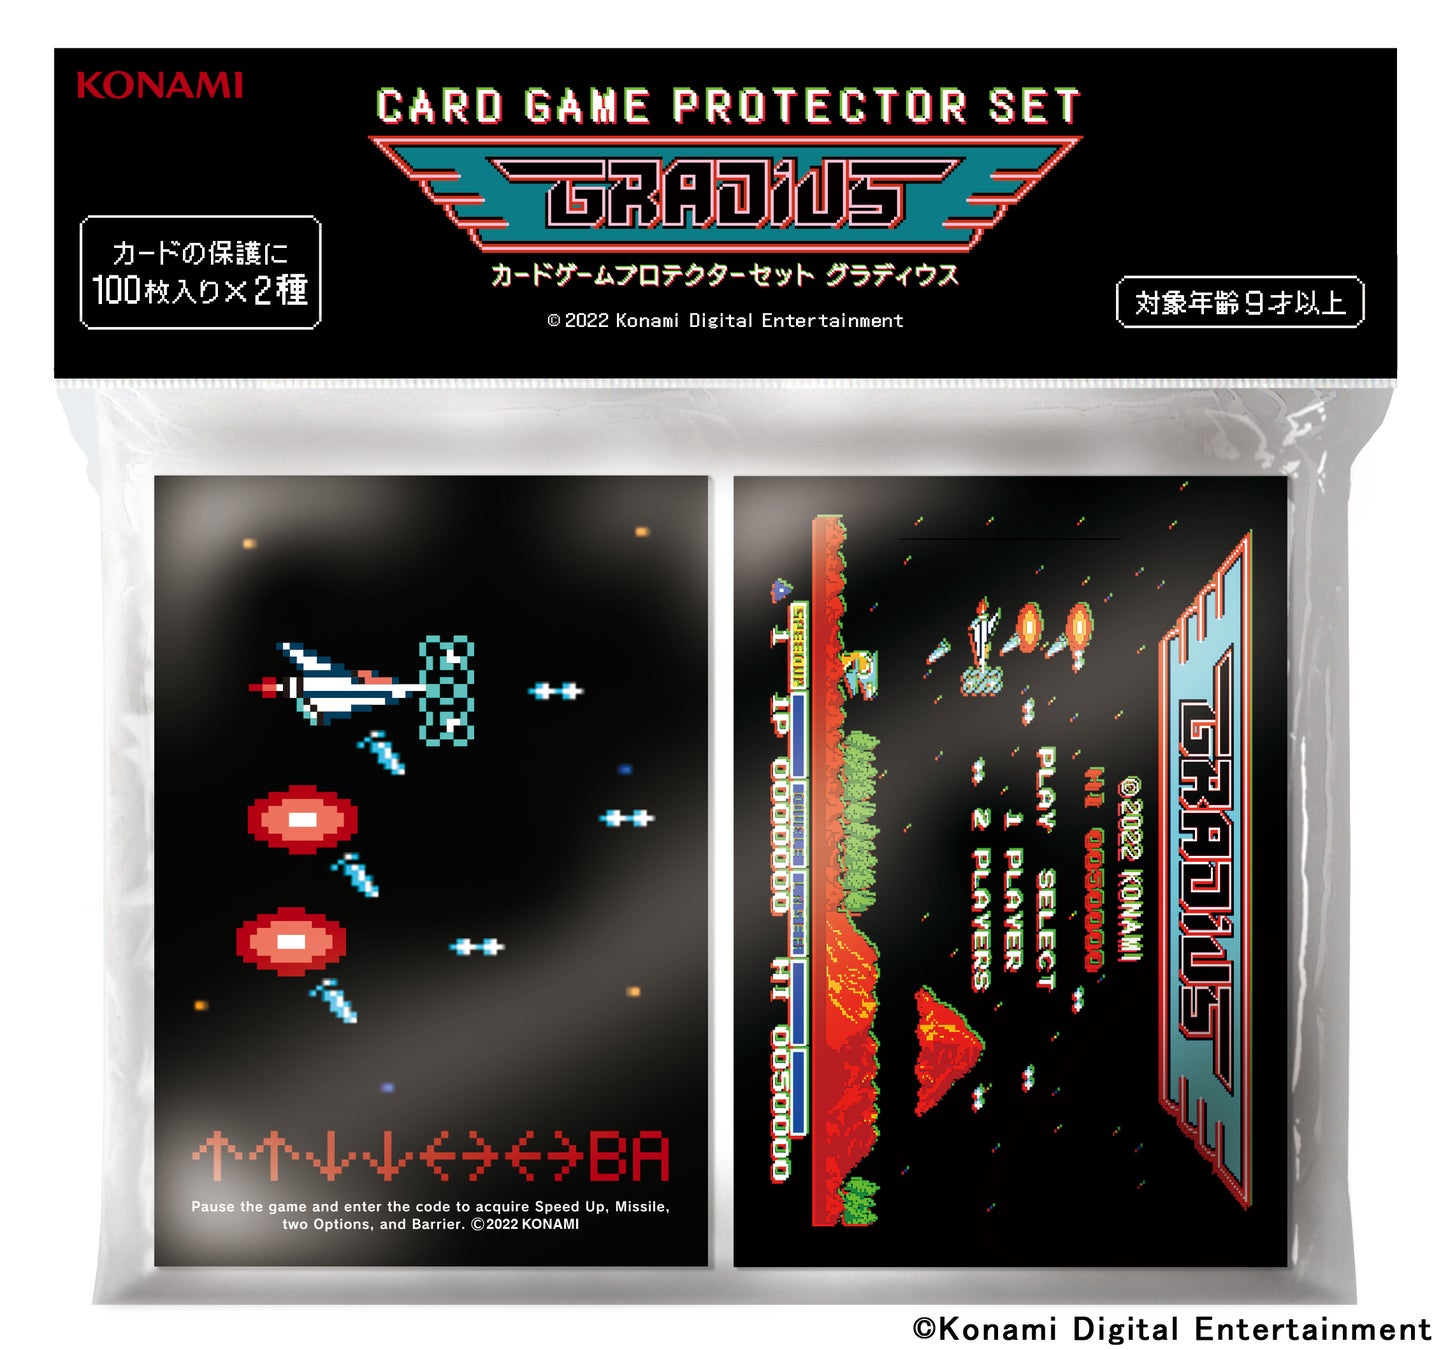 コナミスタイル限定！『グラディウス』デザインのカードゲームプロテクター11月23日発売決定！